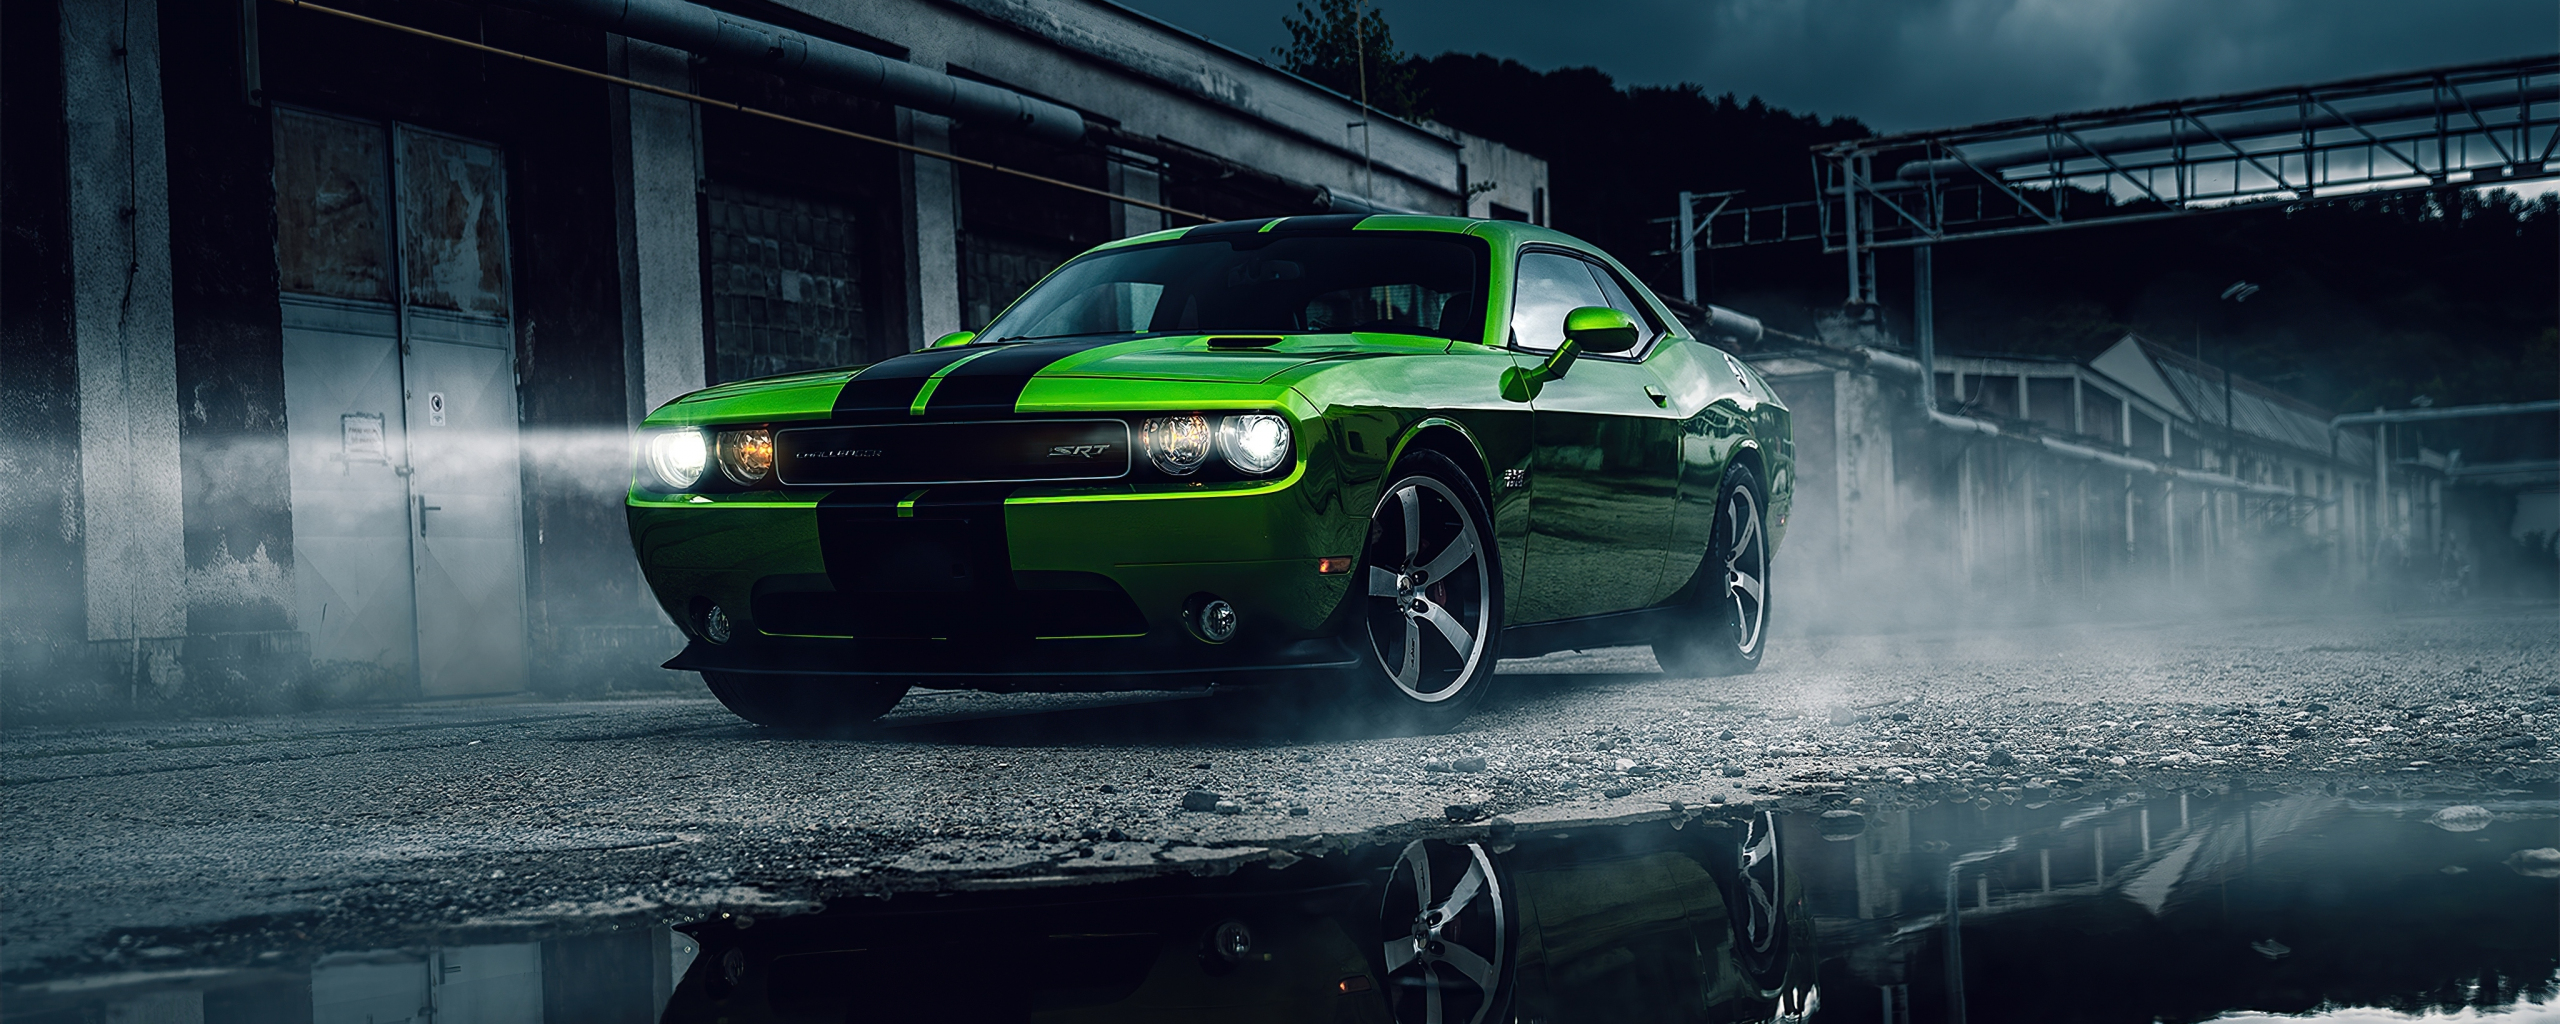 Green Dodge Challenger, muscle car, 2020, 2560x1024 wallpaper